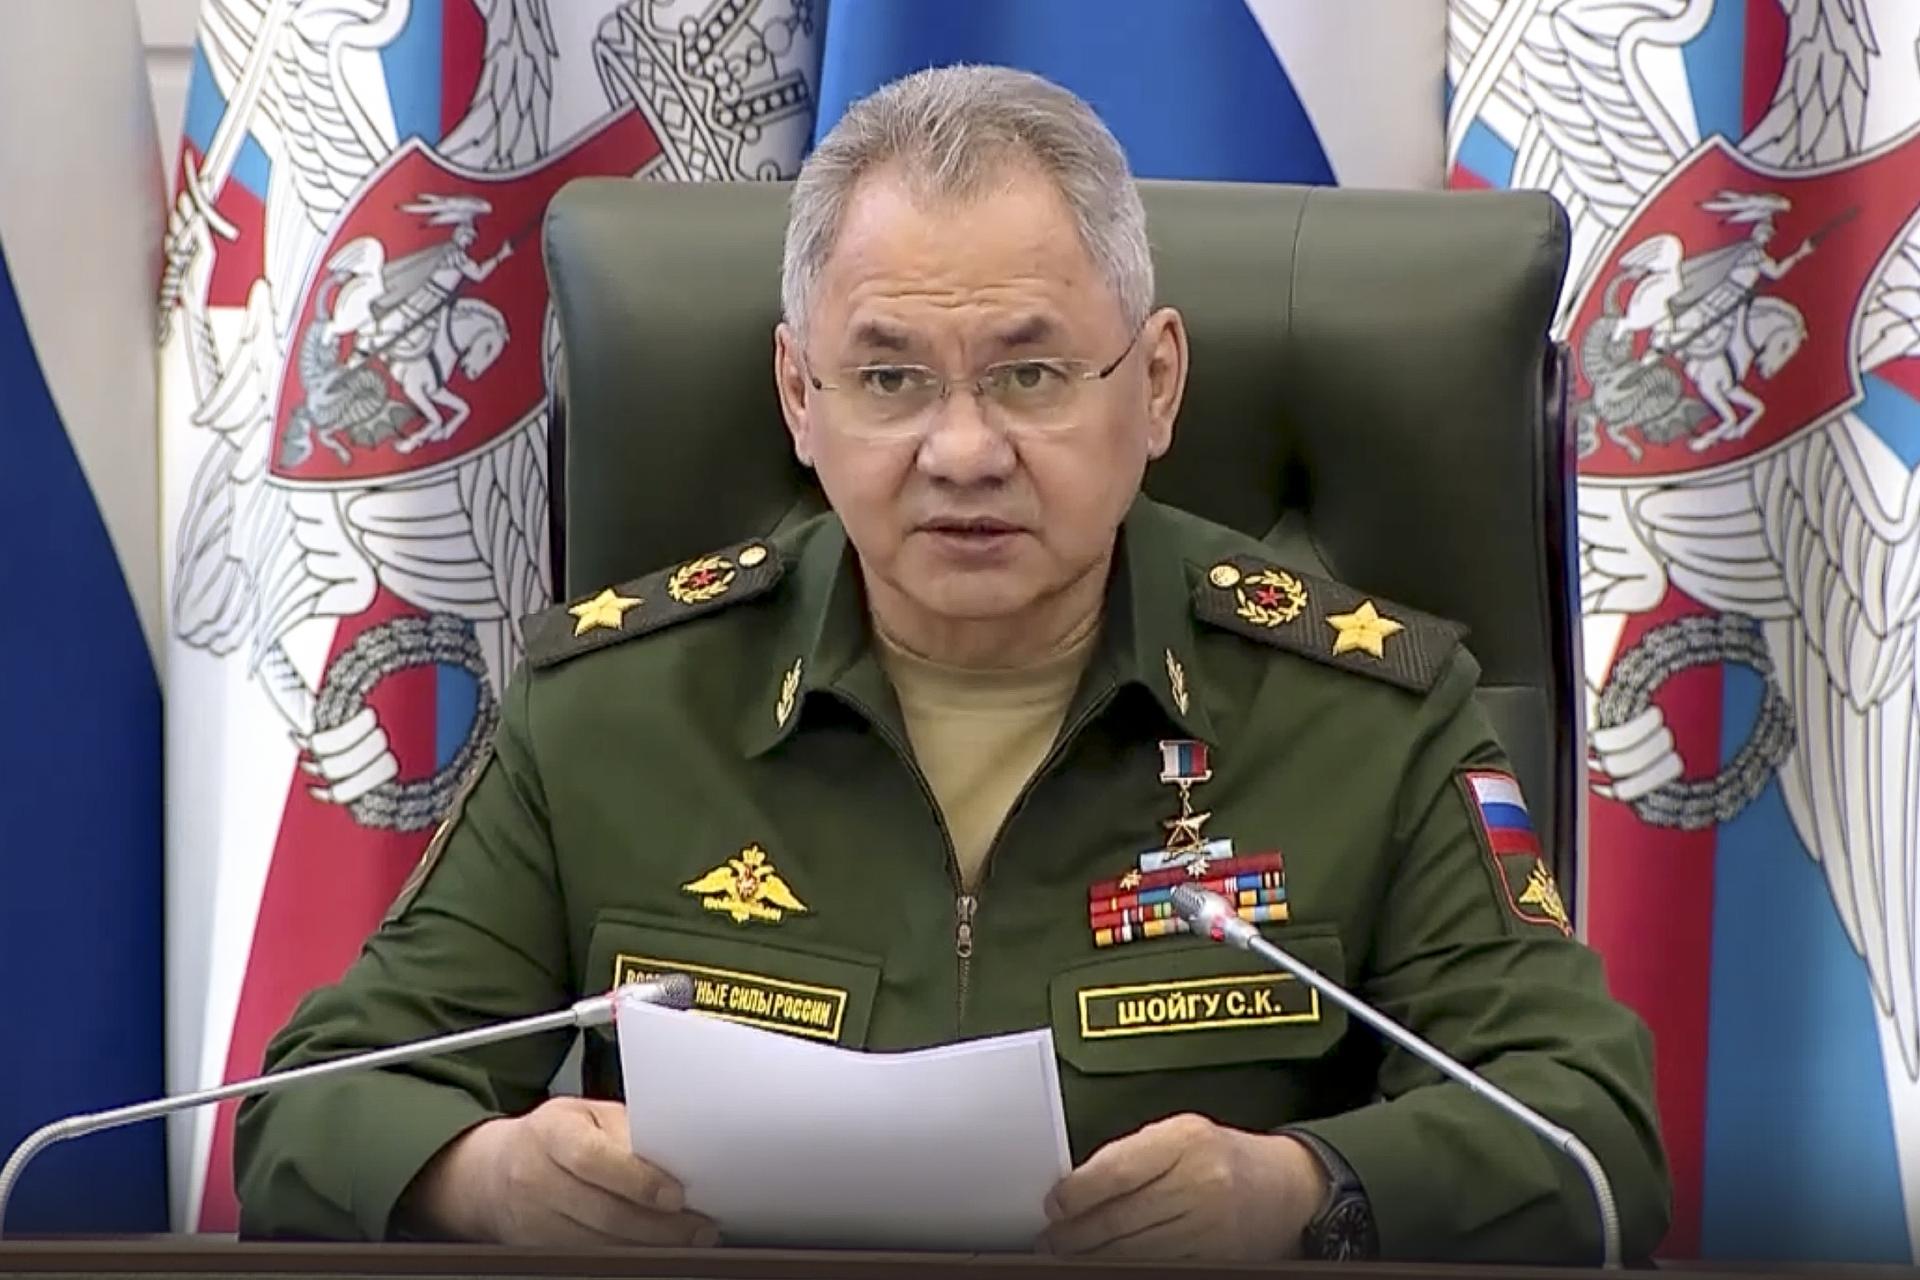 Ruská armáda má záujemcov dosť, denne ich pribudne pluk, tvrdí Šojgu